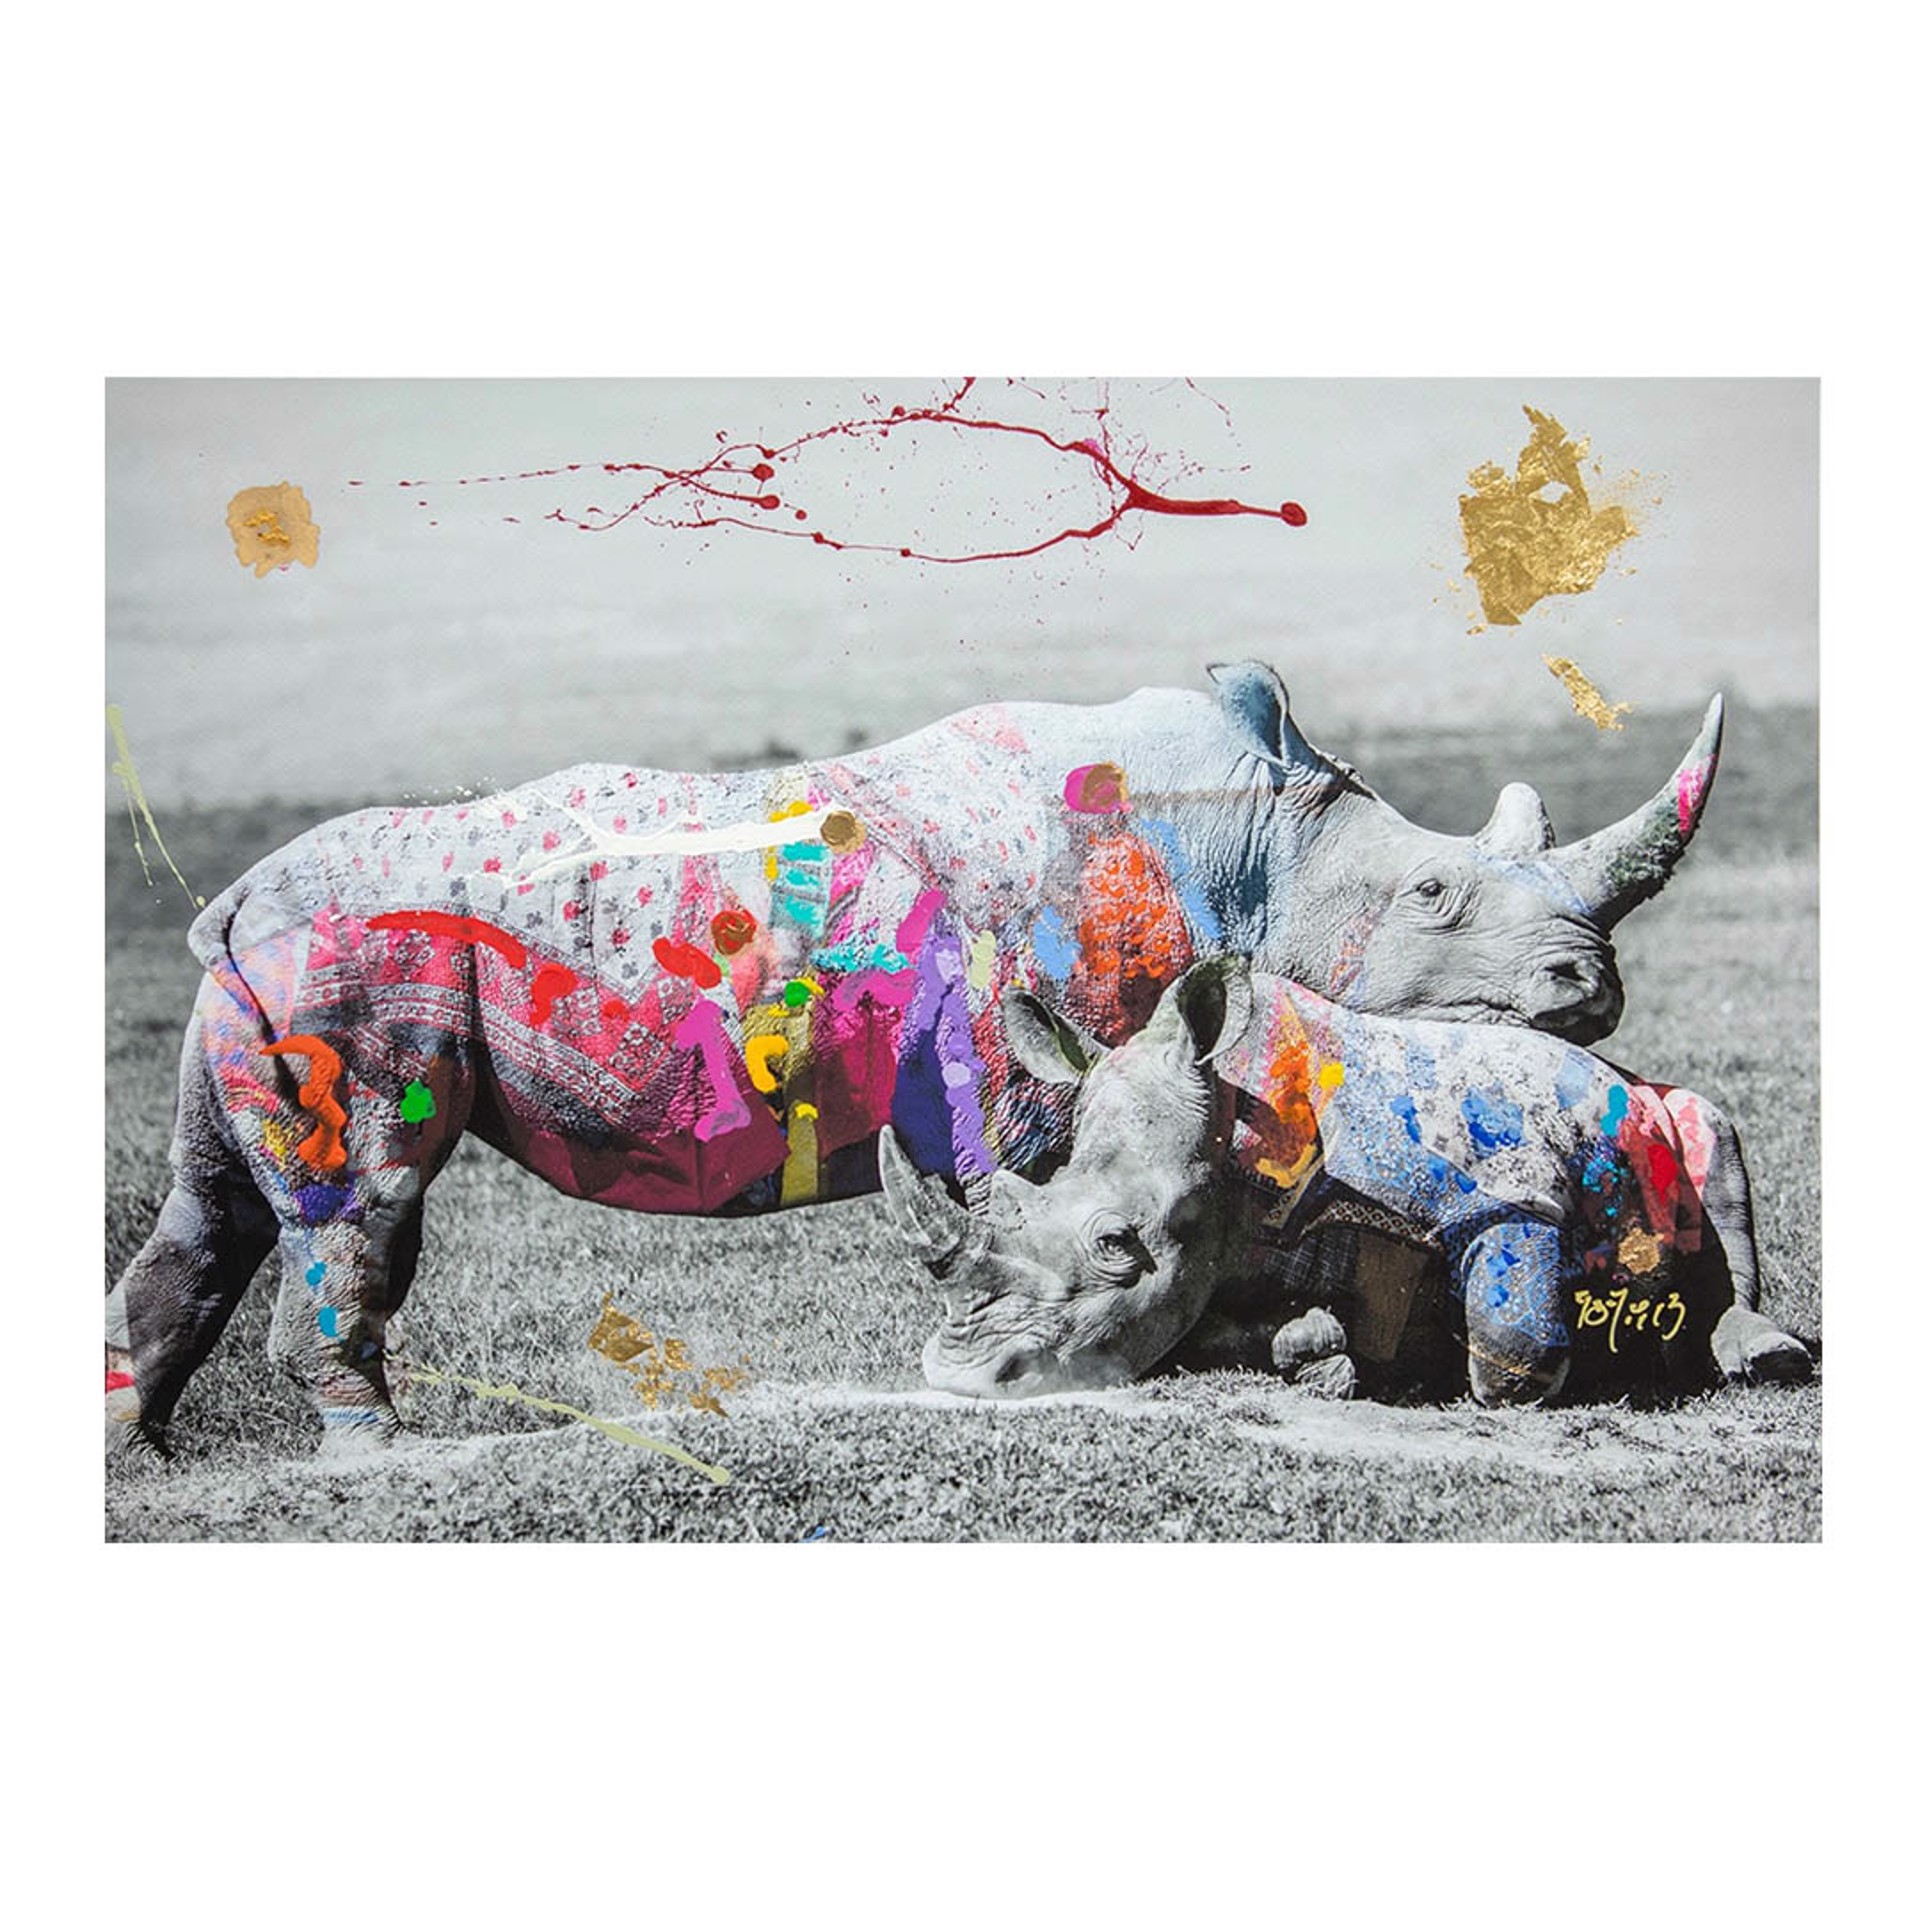 Rhino Love by Arno Elias